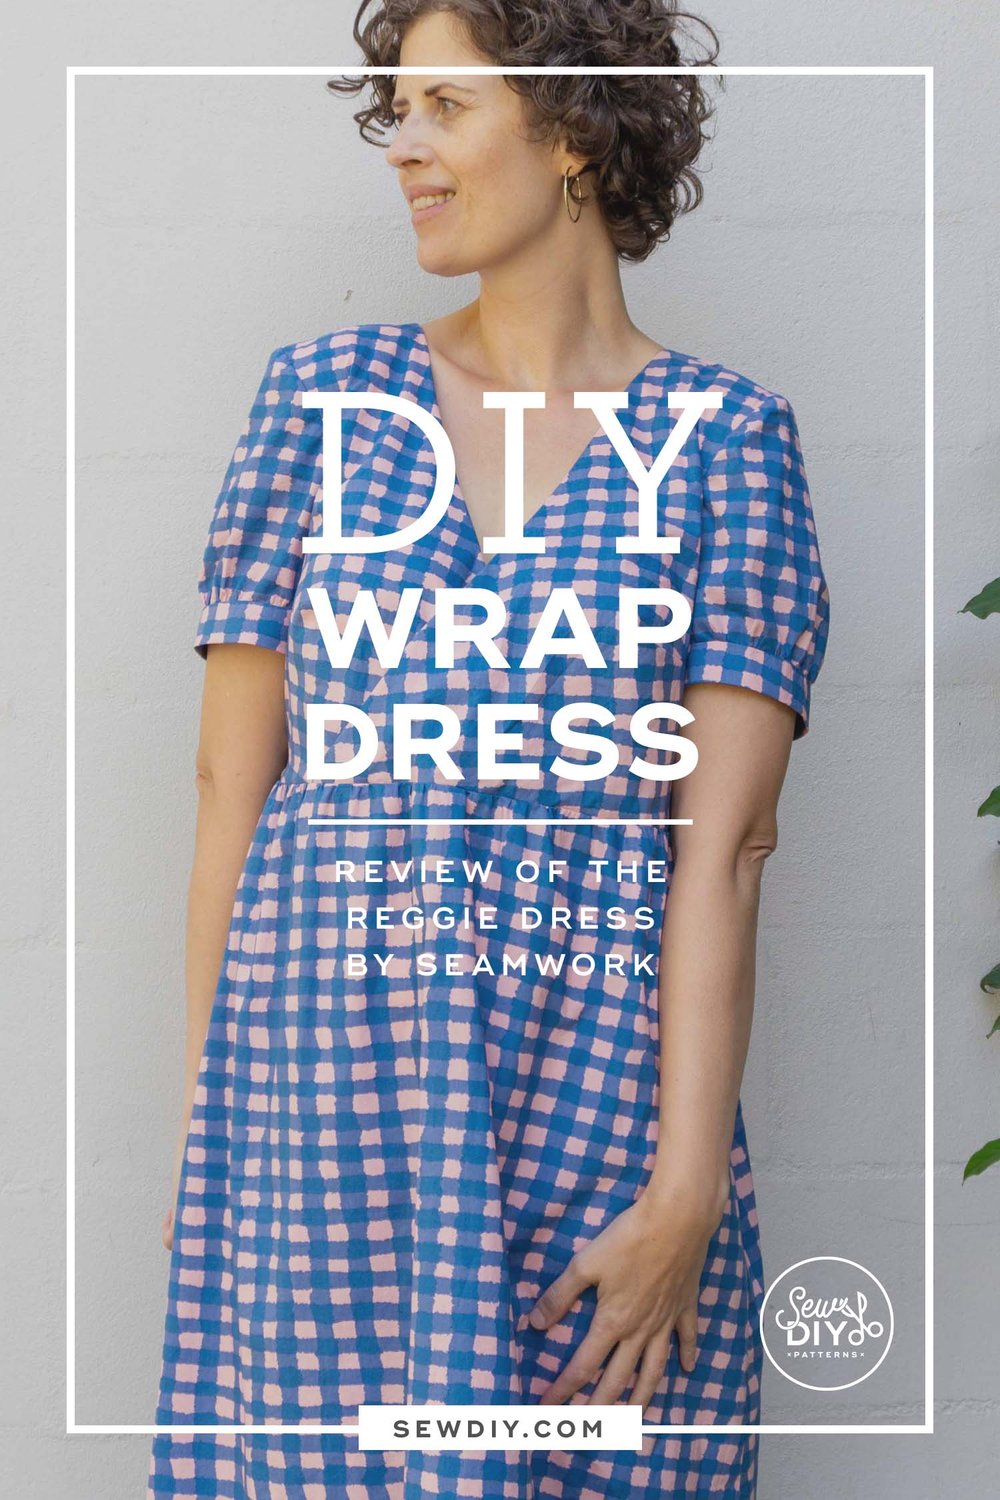 DIY Faux Wrap Dress – Review of the Reggie Dress by Seamwork